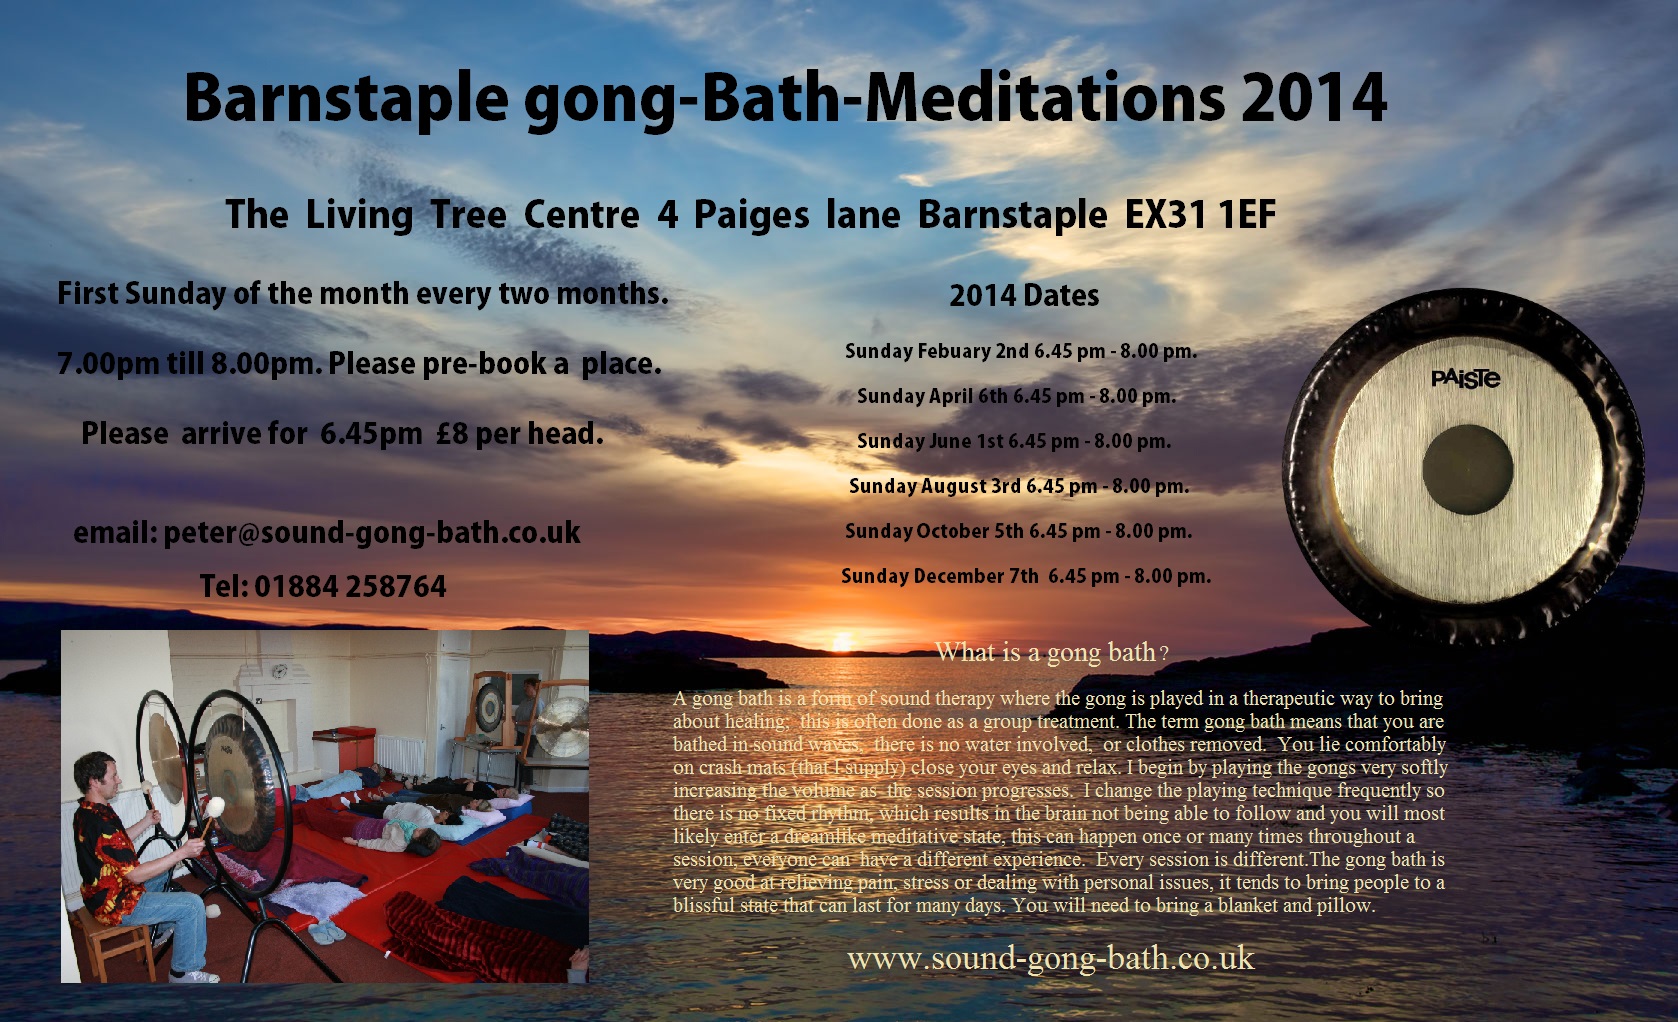 BARNSTAPLE DEVON - Barnstaple Gong Bath Meditation.  5th October  2014